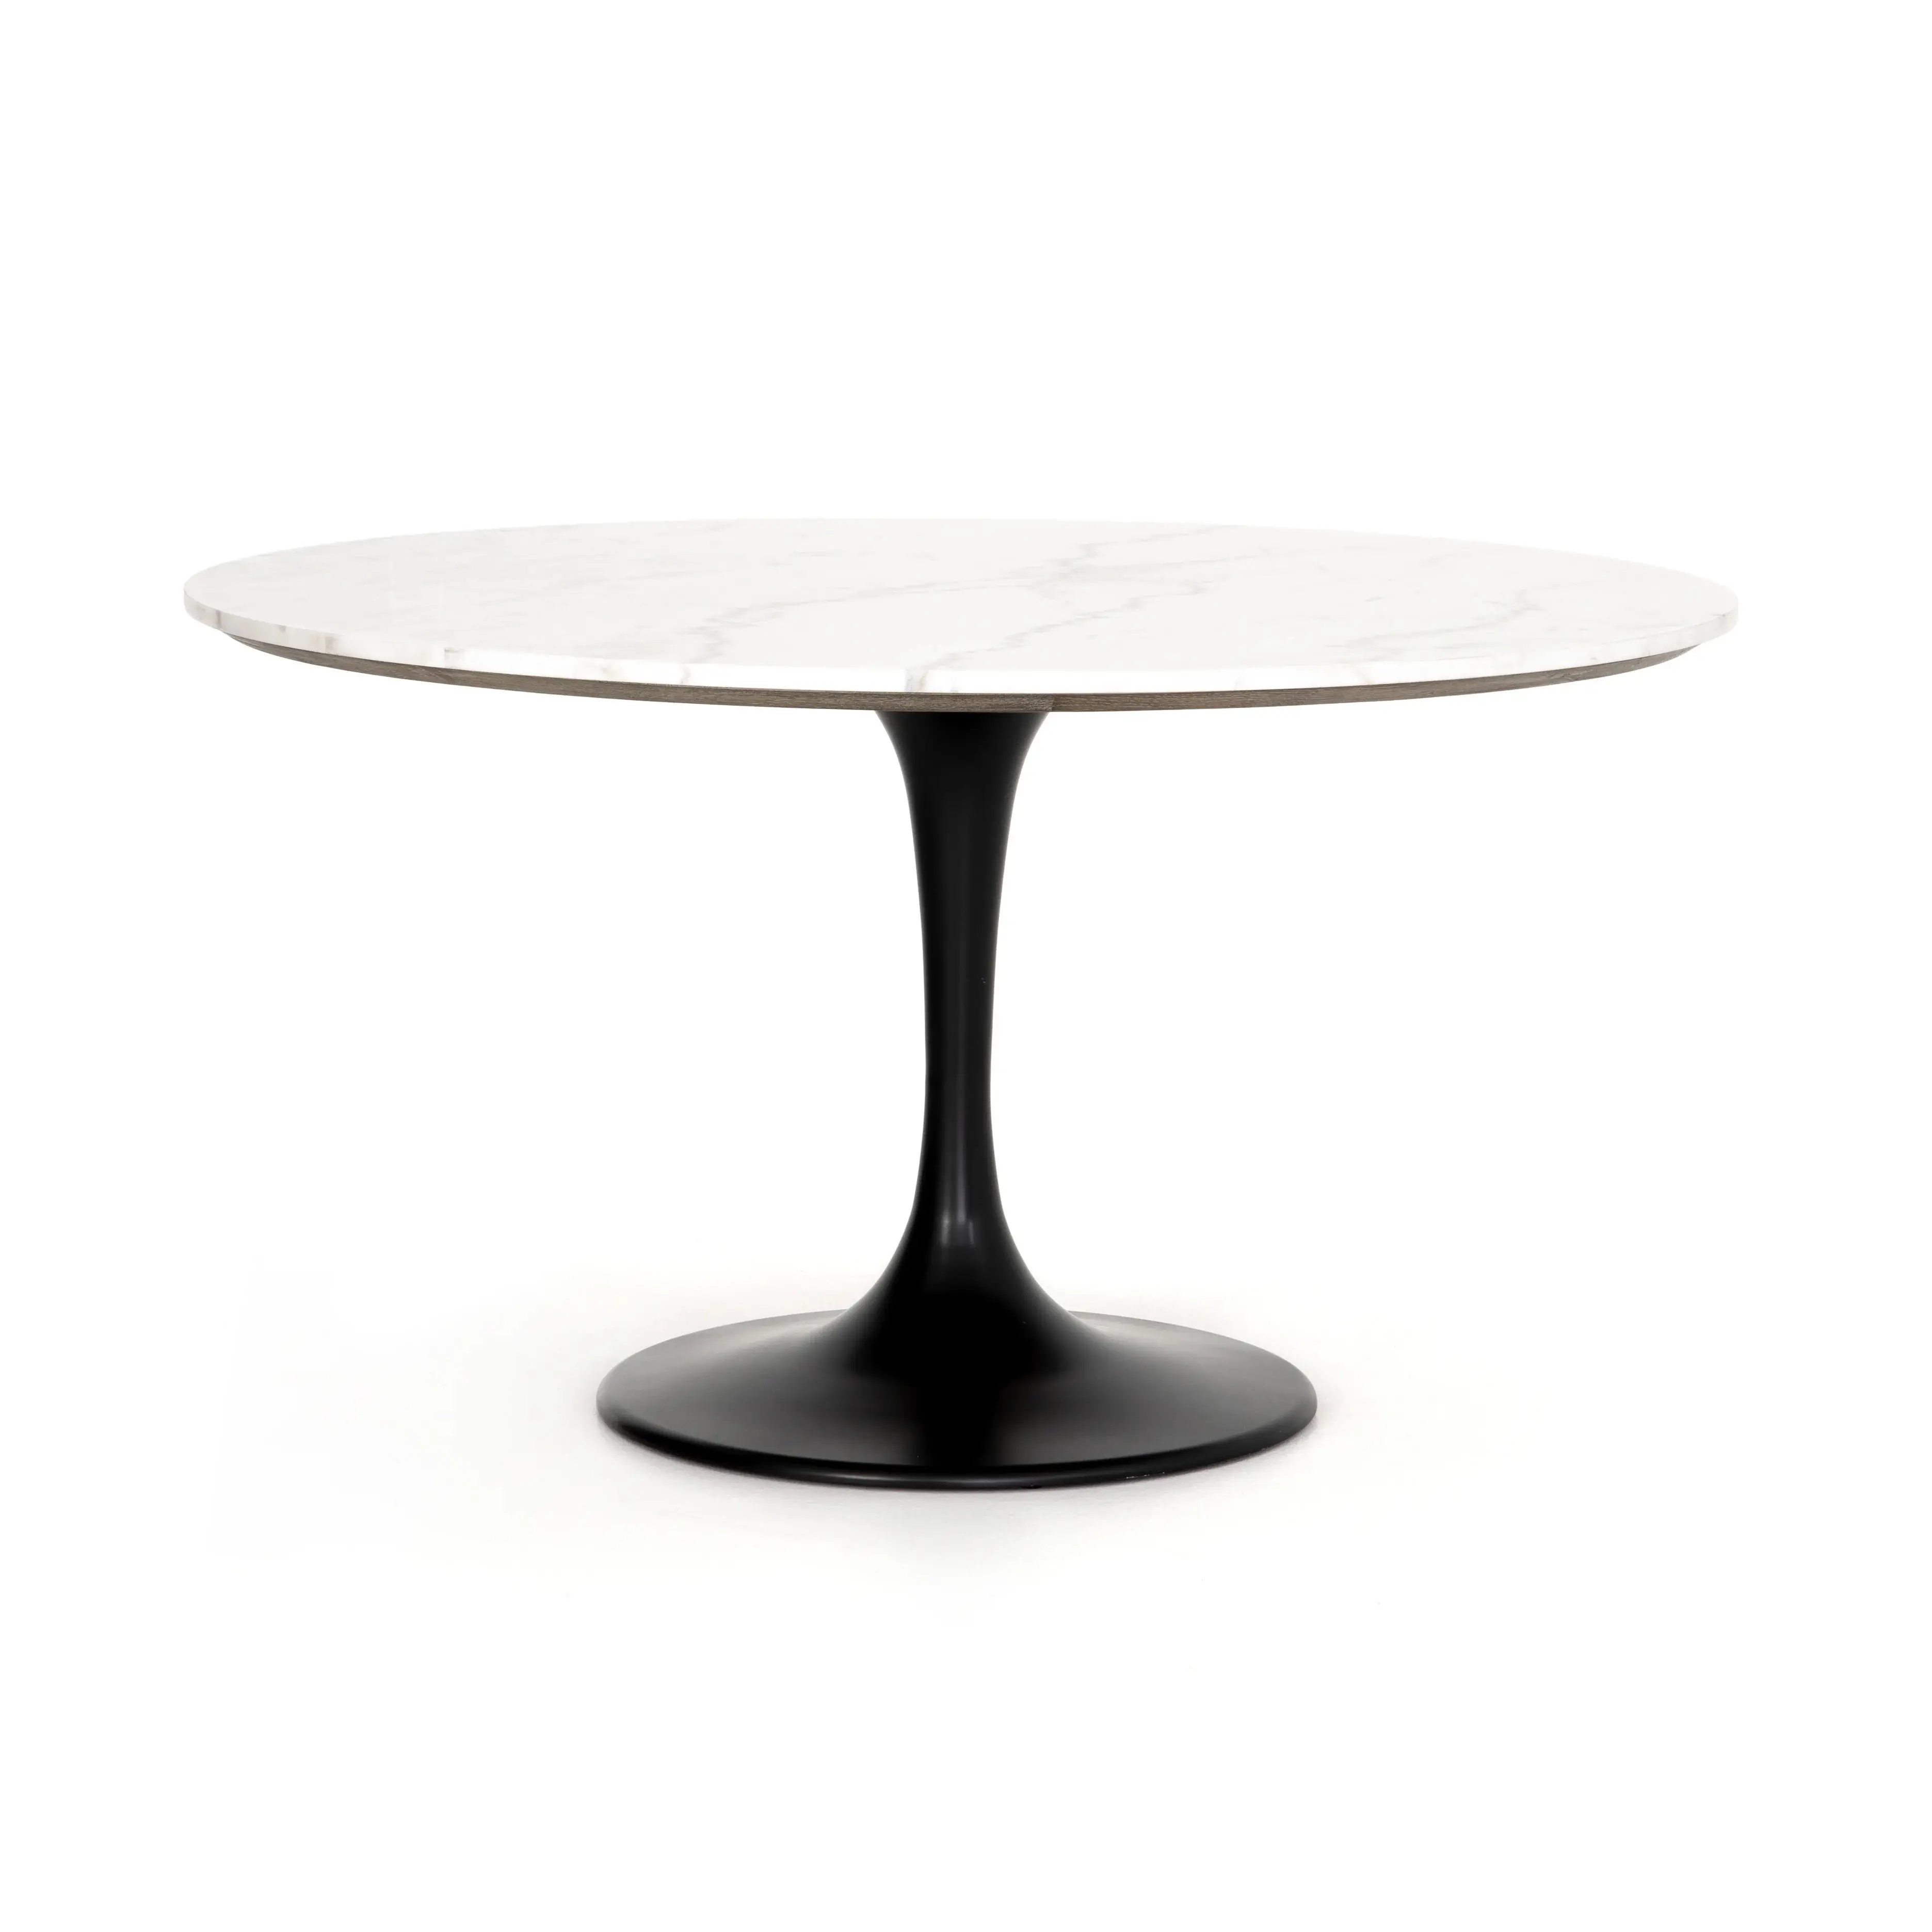 Thiết kế mới chất lượng cao hiện đại sang trọng bằng đá cẩm thạch đầu vòng bàn ăn.